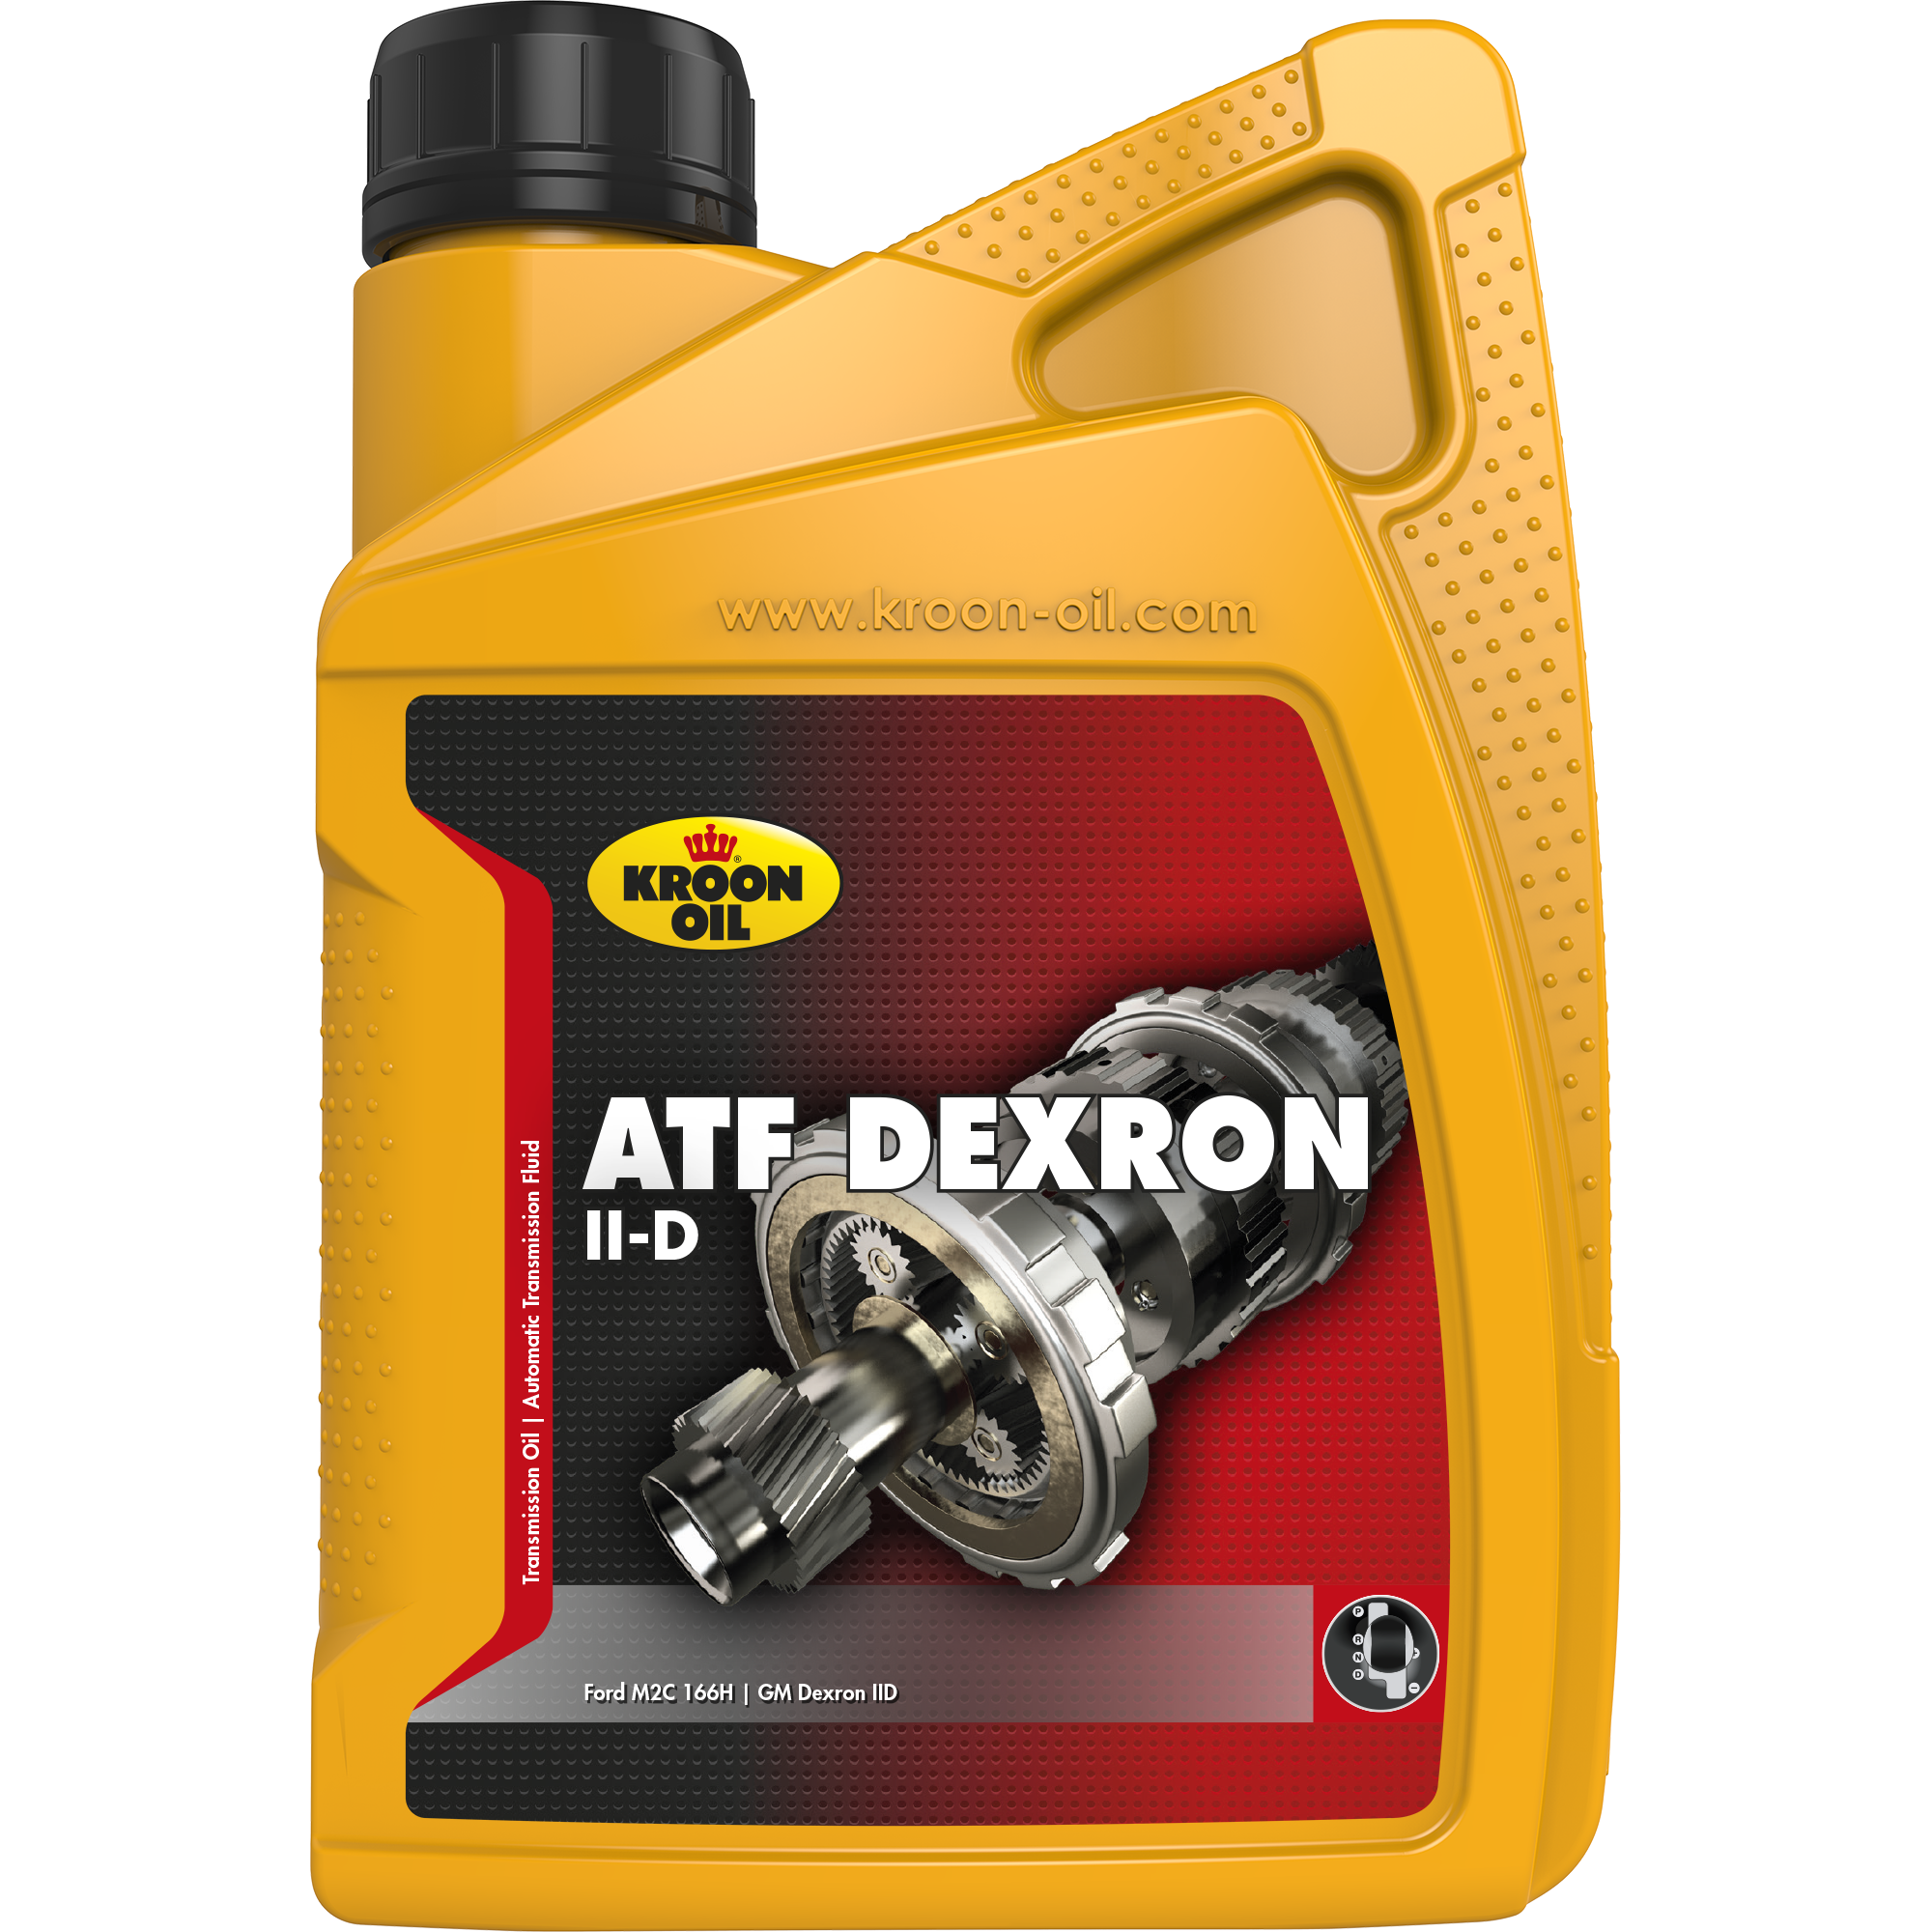 01208-1 ATF Dexron II-D is een zeer hoogwaardige, automatische transmissieolie gebaseerd op solvent geraffineerde basisoliën.